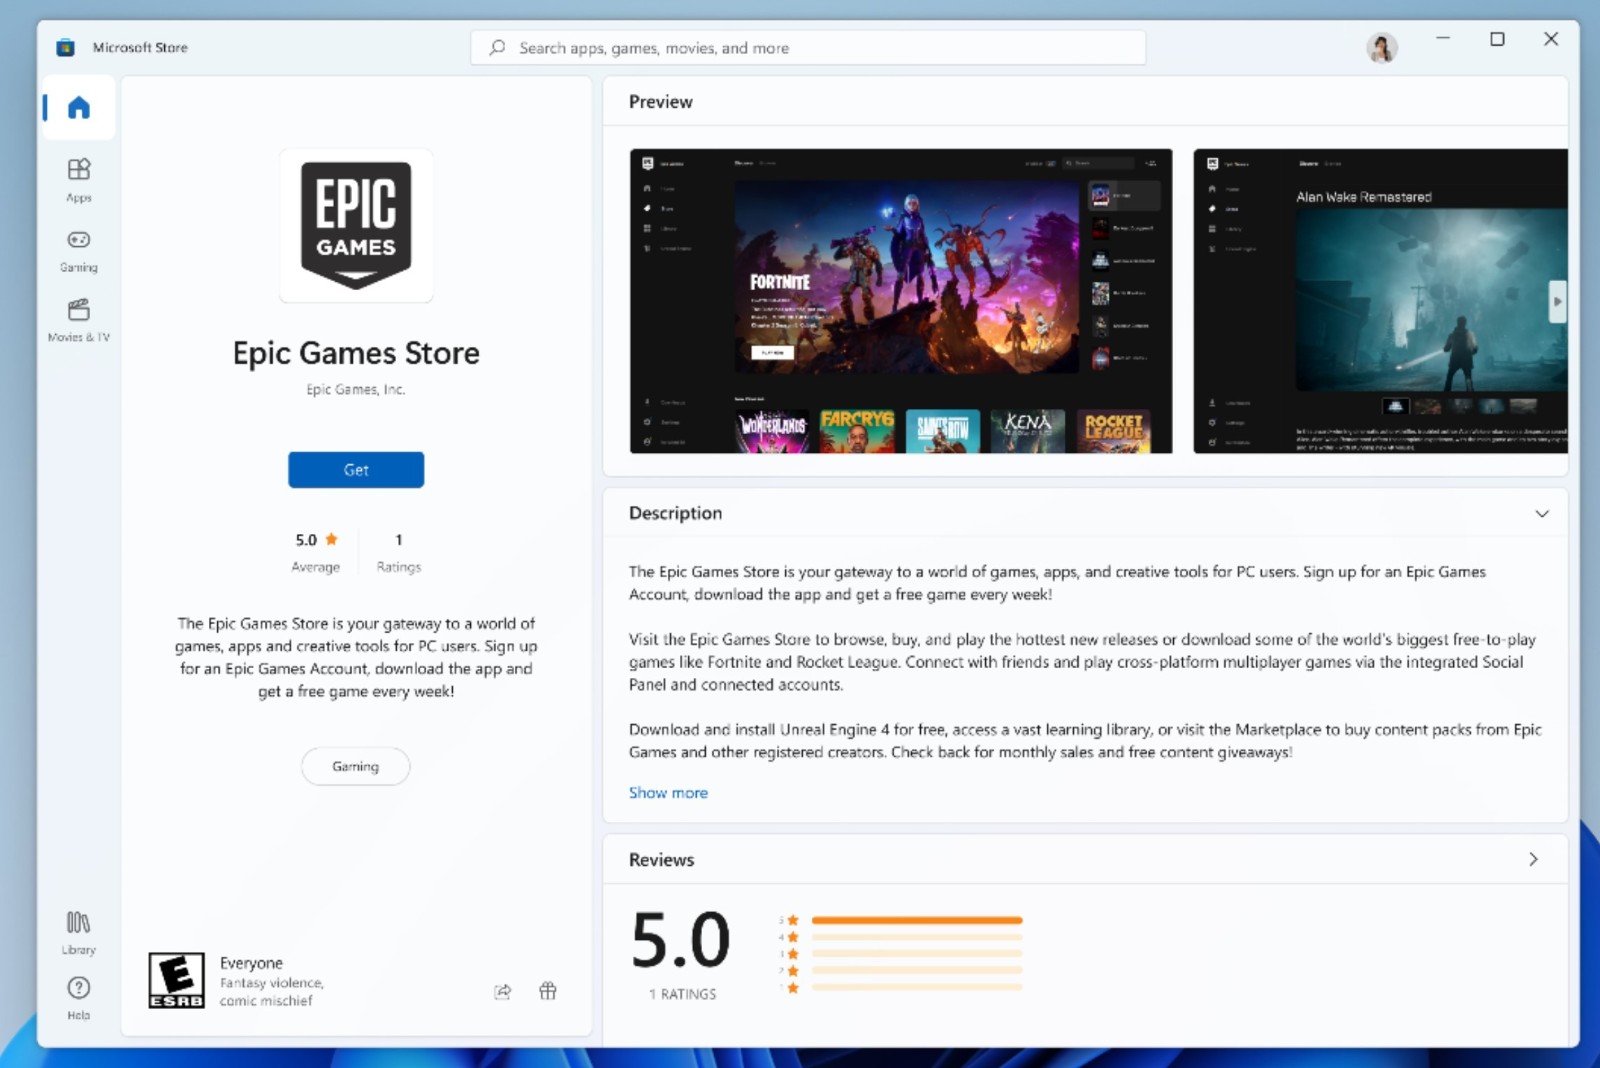 Epic游戏商城应用现在可从Microsoft Store中下载